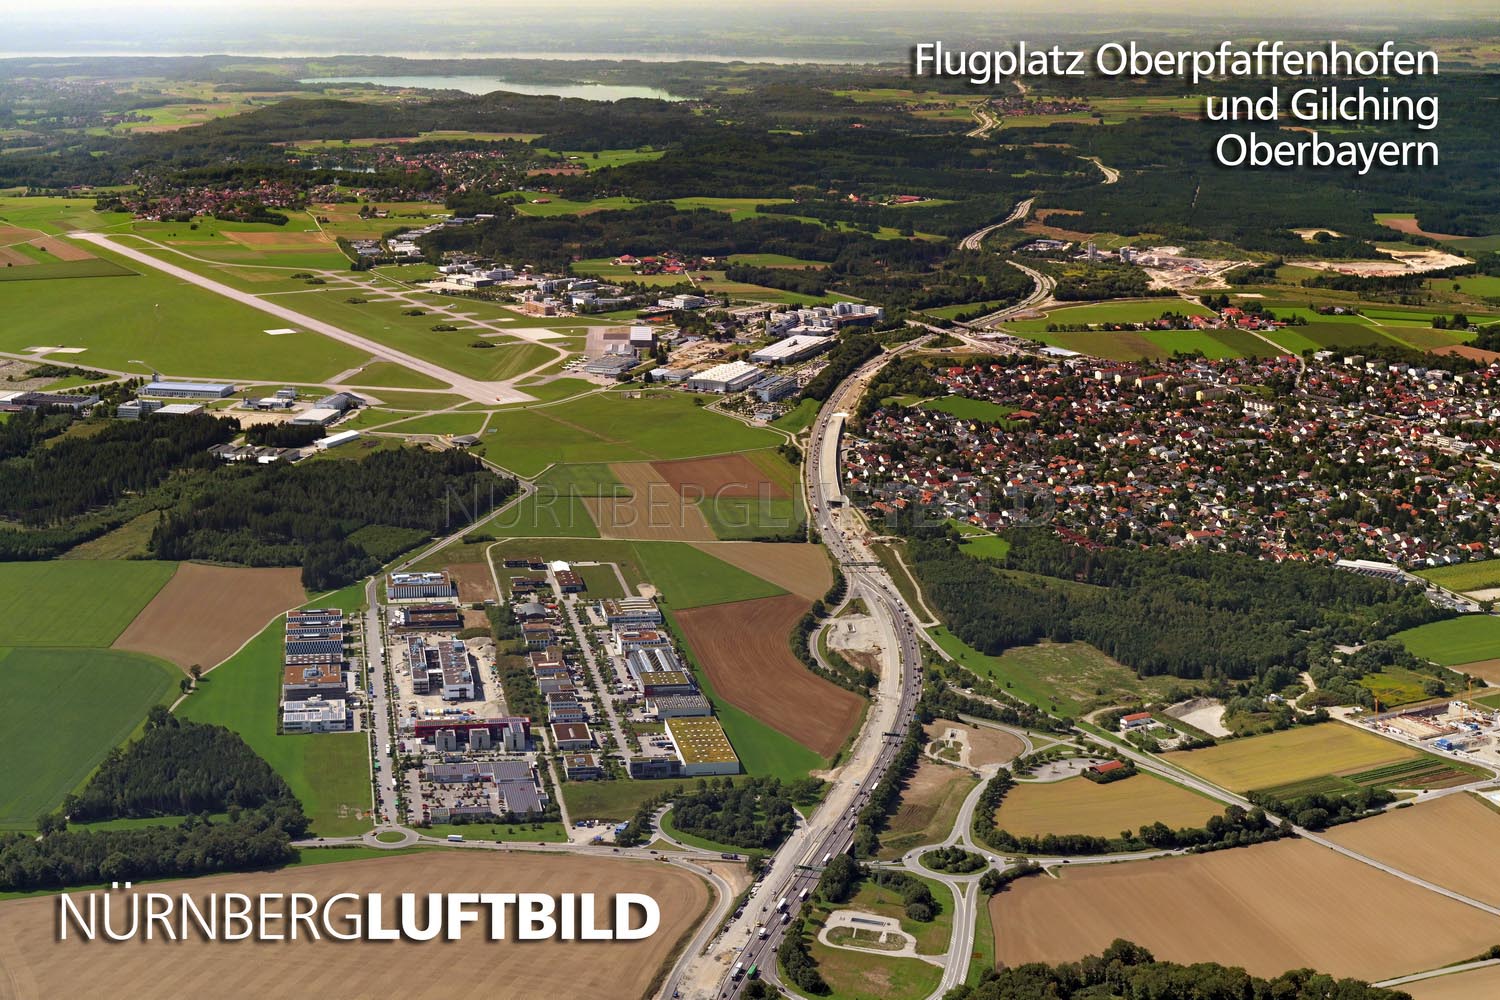 Flugplatz Oberpfaffenhofen und Gilching, Oberbayern